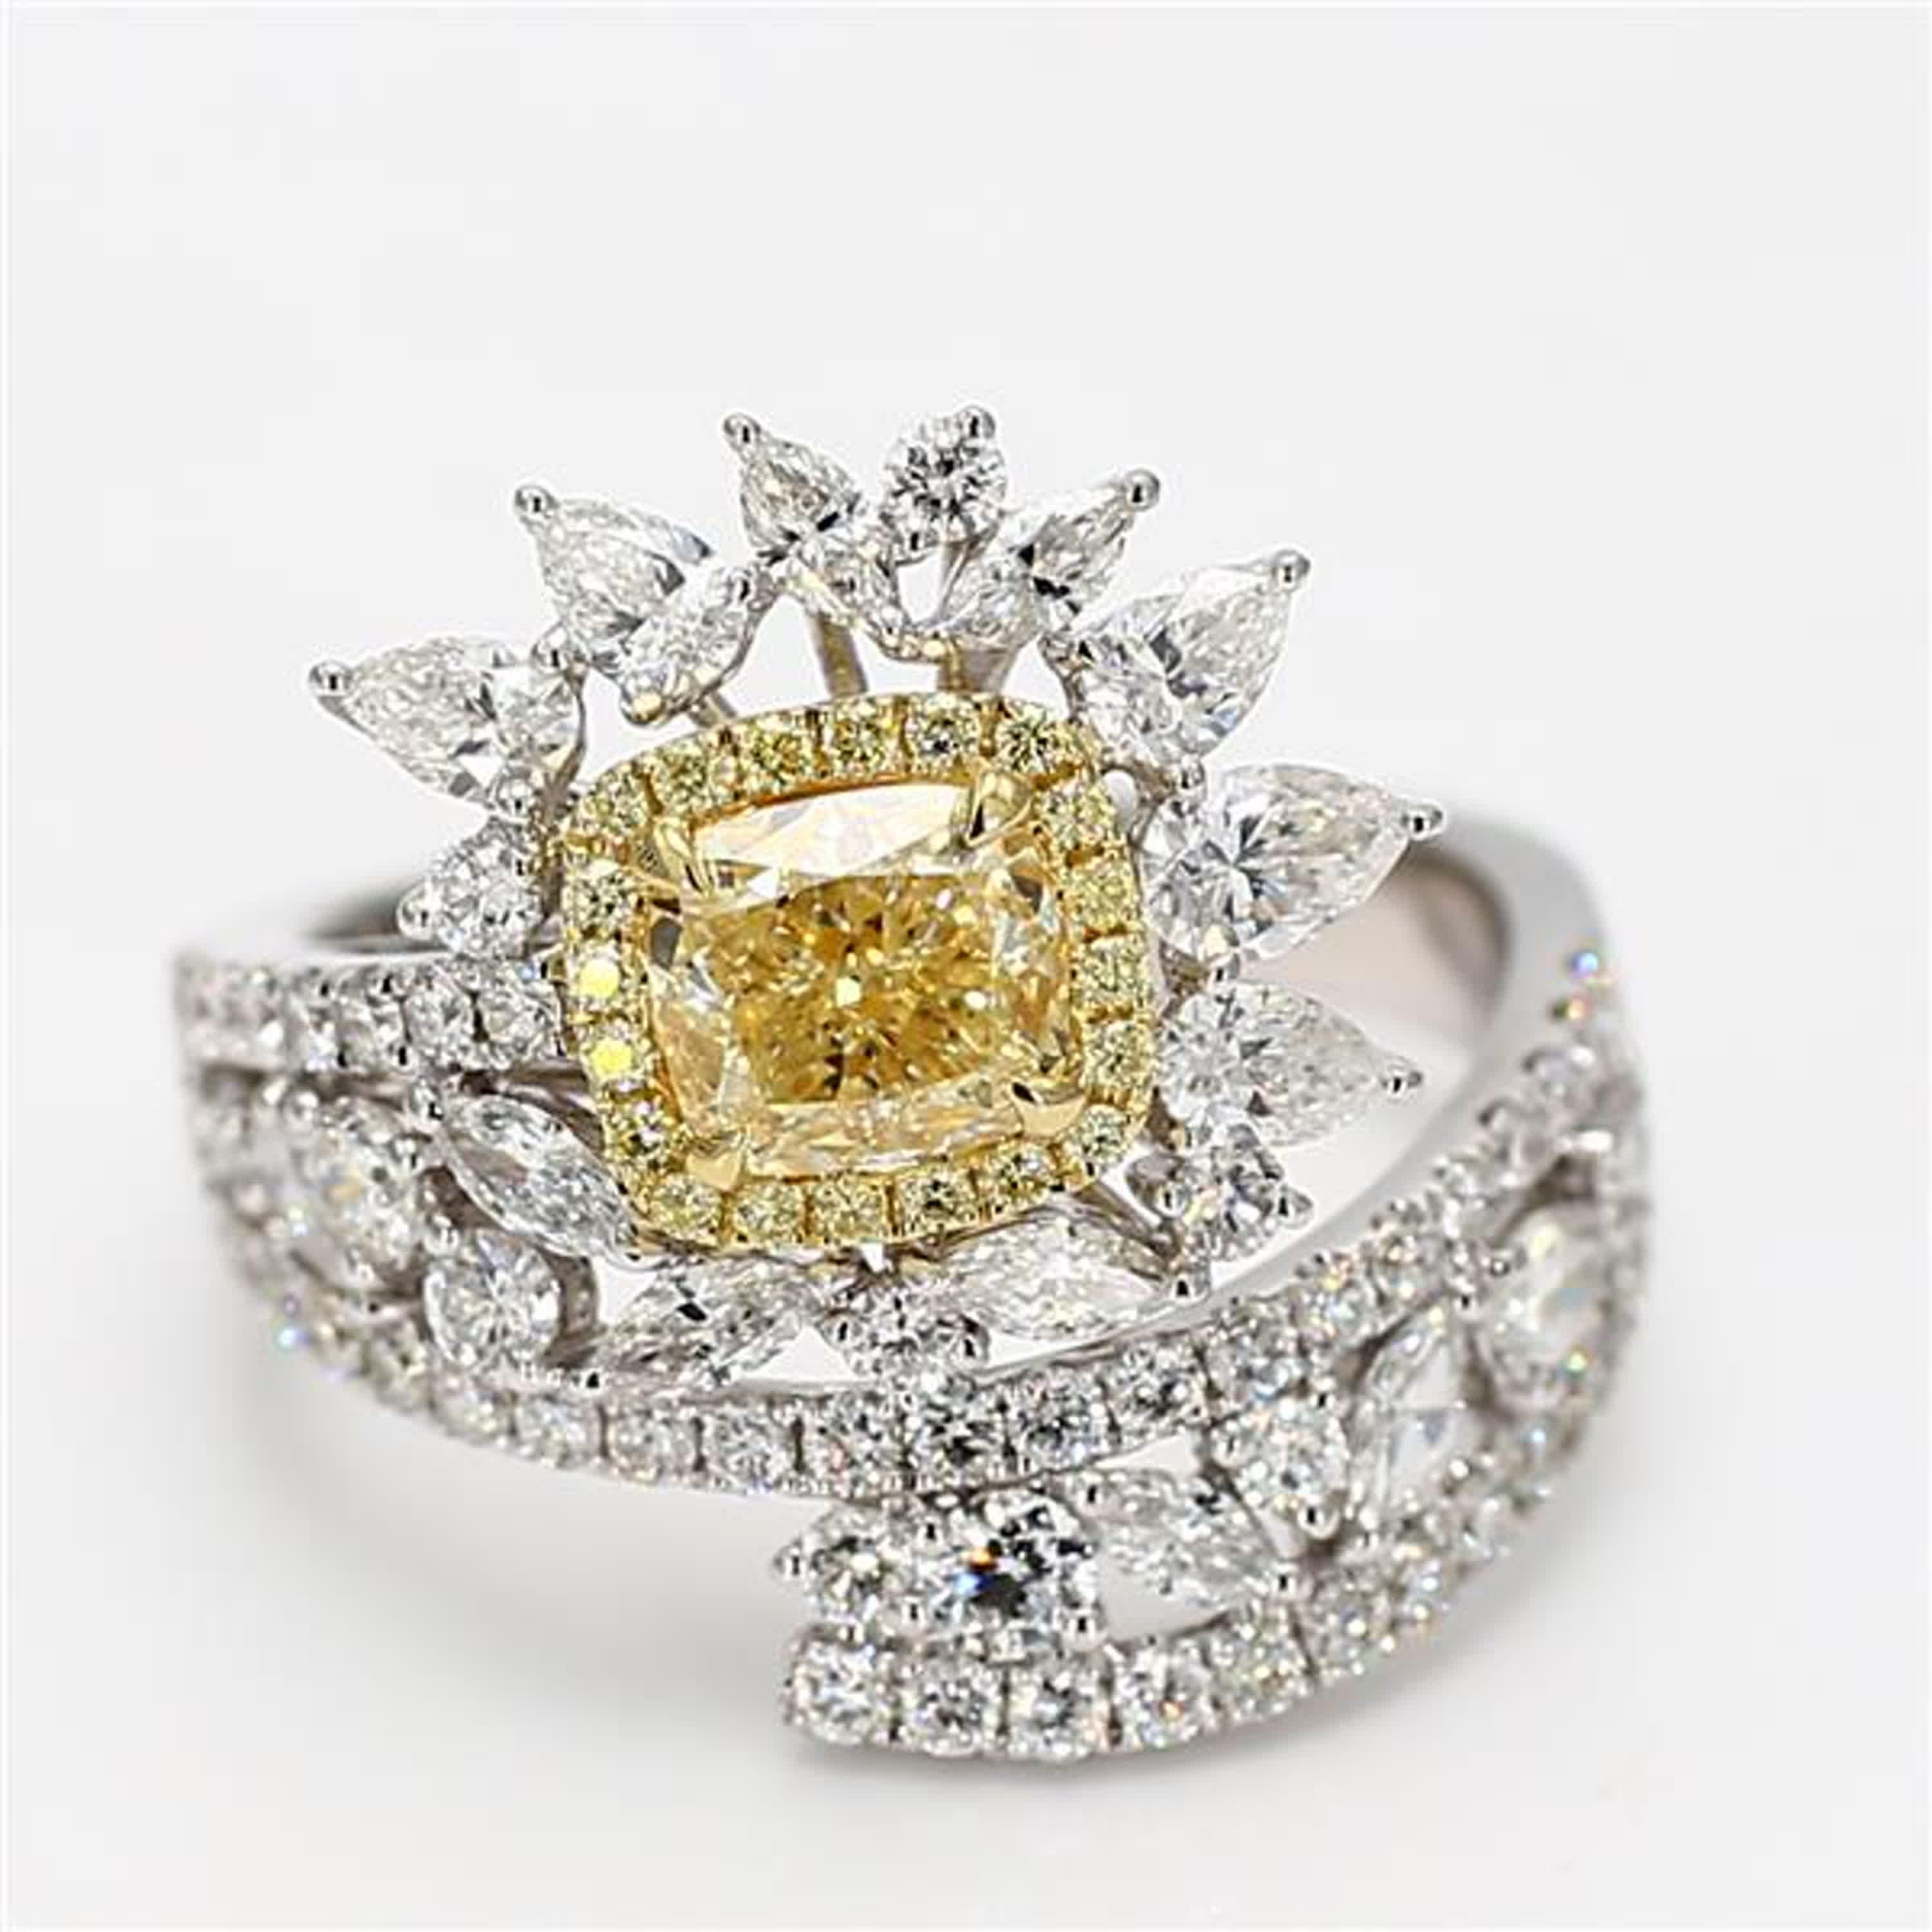 Der klassische GIA-zertifizierte Diamantring von RareGemWorld. Montiert in einer schönen Fassung aus 18 Karat Gelb- und Weißgold mit einem natürlichen gelben Diamanten im Kissenschliff. Der gelbe Diamant ist umgeben von natürlichen weißen Diamanten